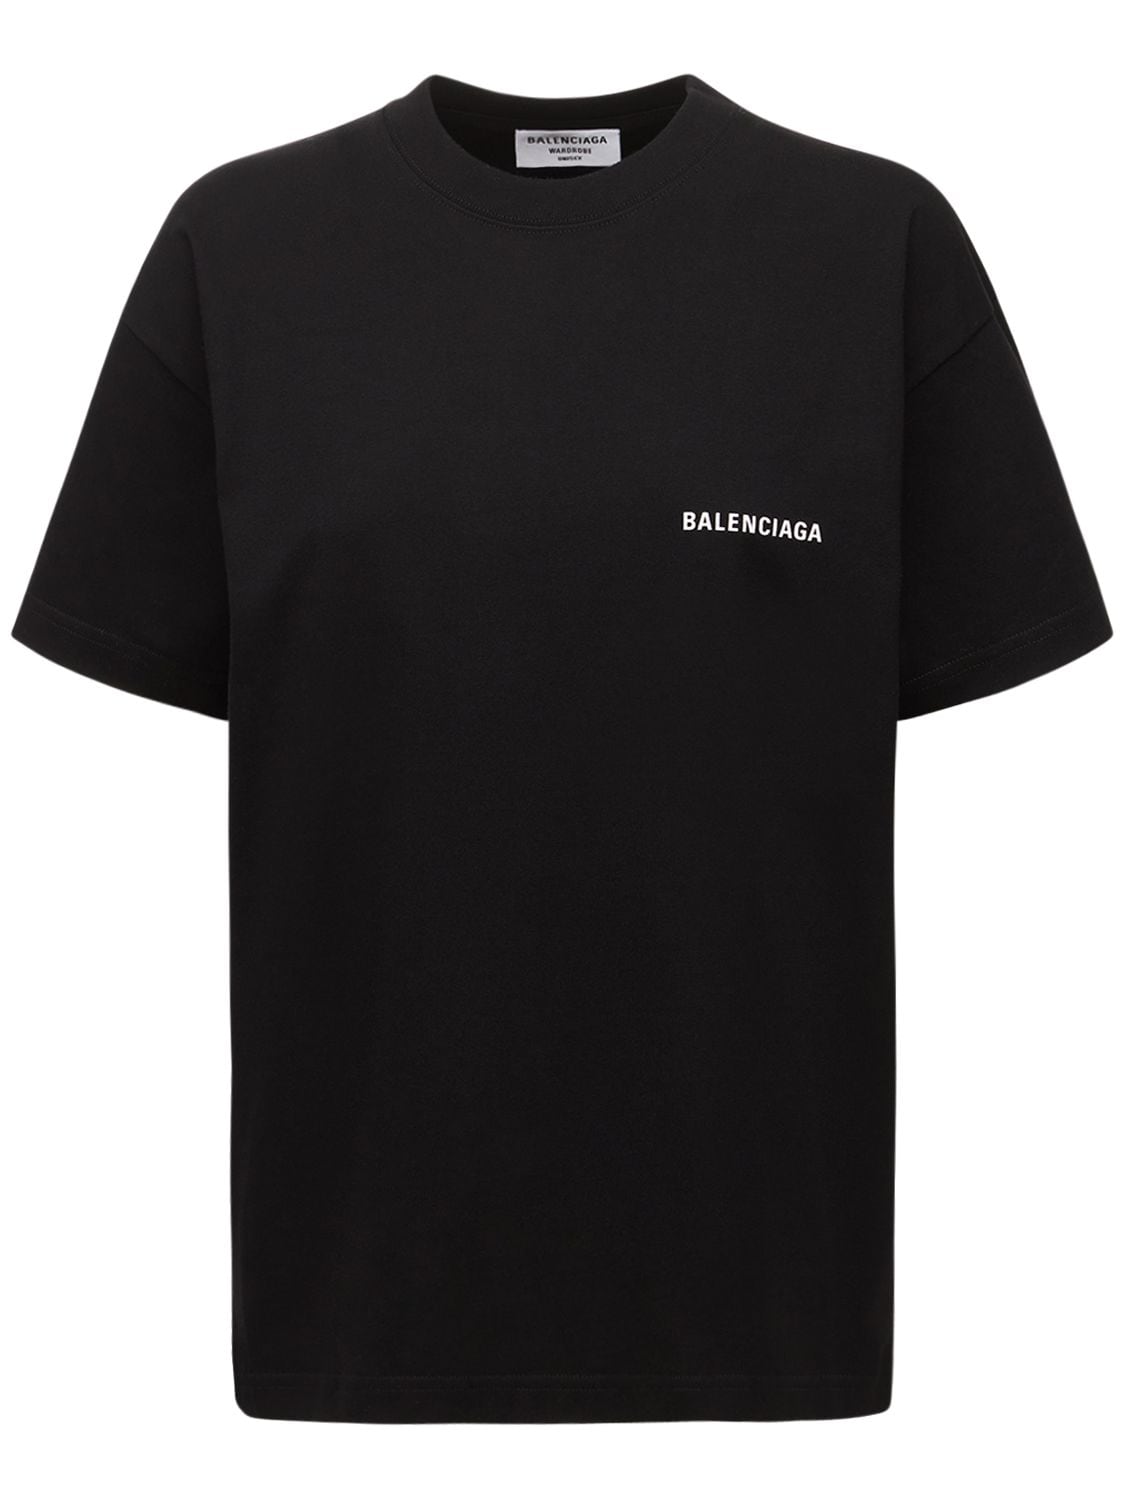 Bedrucktes T-shirt Aus Jersey Mit Logo - BALENCIAGA - Modalova